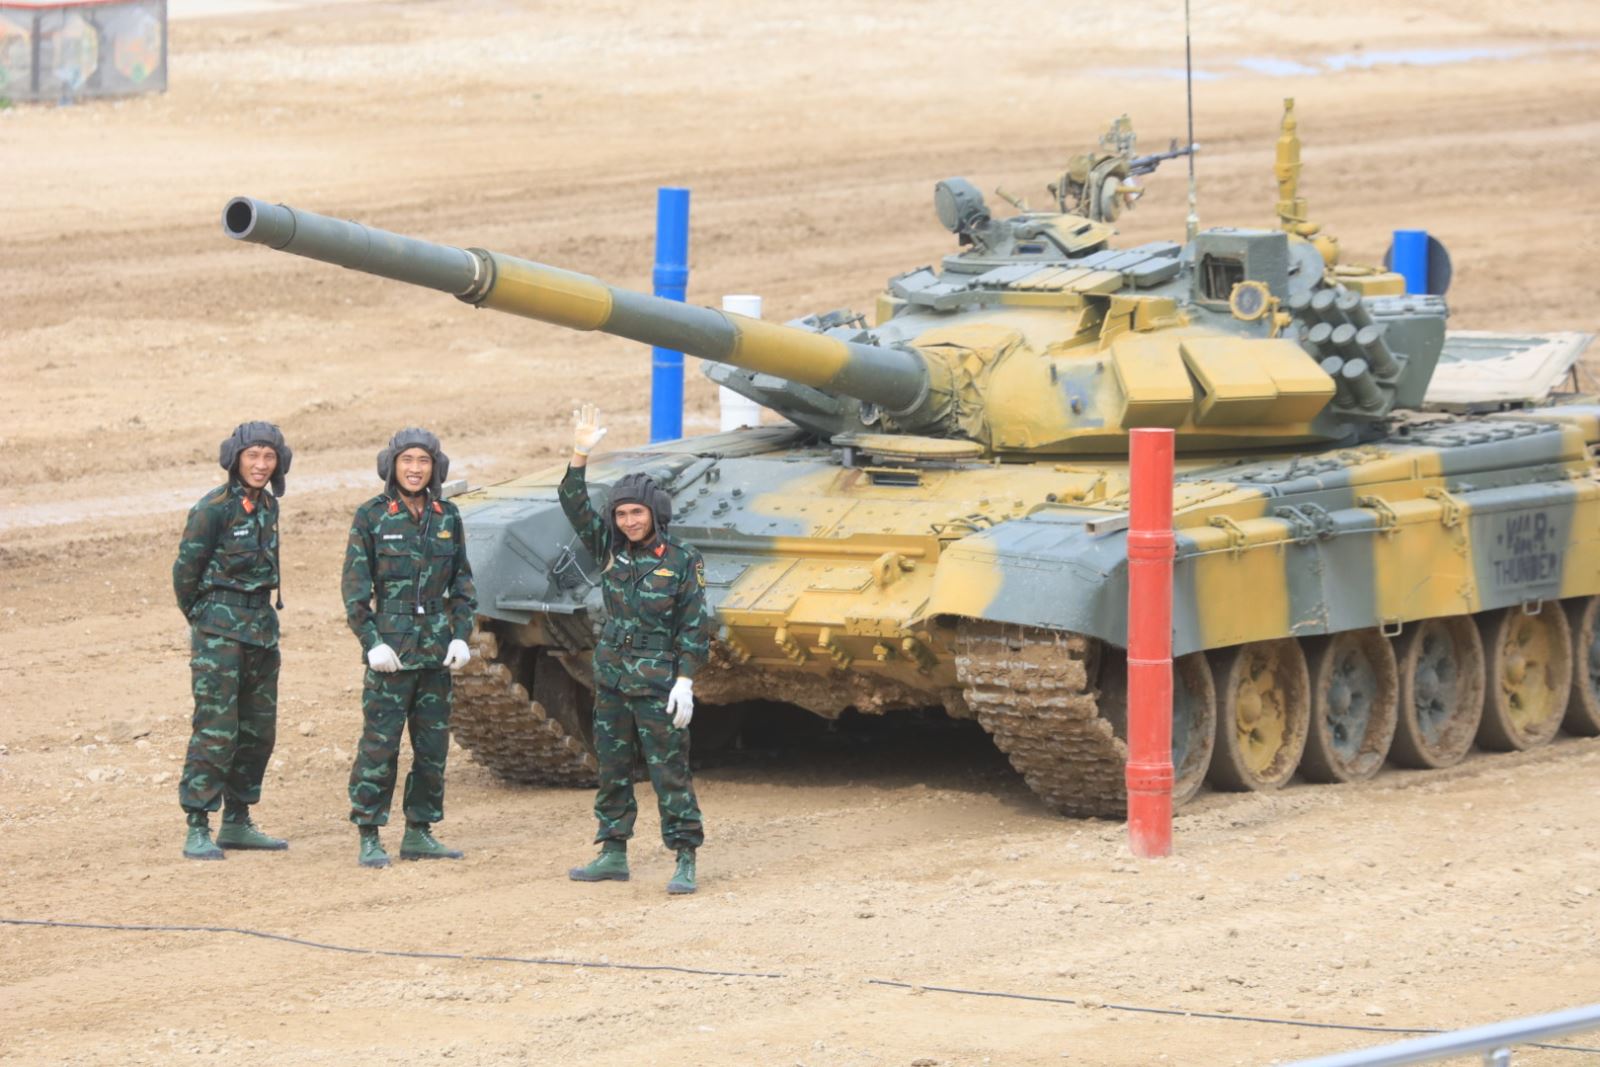 Chung kết Tank là những giây phút gay cấn không thể bỏ lỡ với hình ảnh chiếc xe tăng Việt Nam ra sức tranh tài và giành chiến thắng cùng hàng ngàn khán giả hồi hộp chứng kiến. Bạn sẽ được xem một màn trình diễn về sức mạnh và tài năng quân sự của quân đội Việt Nam.